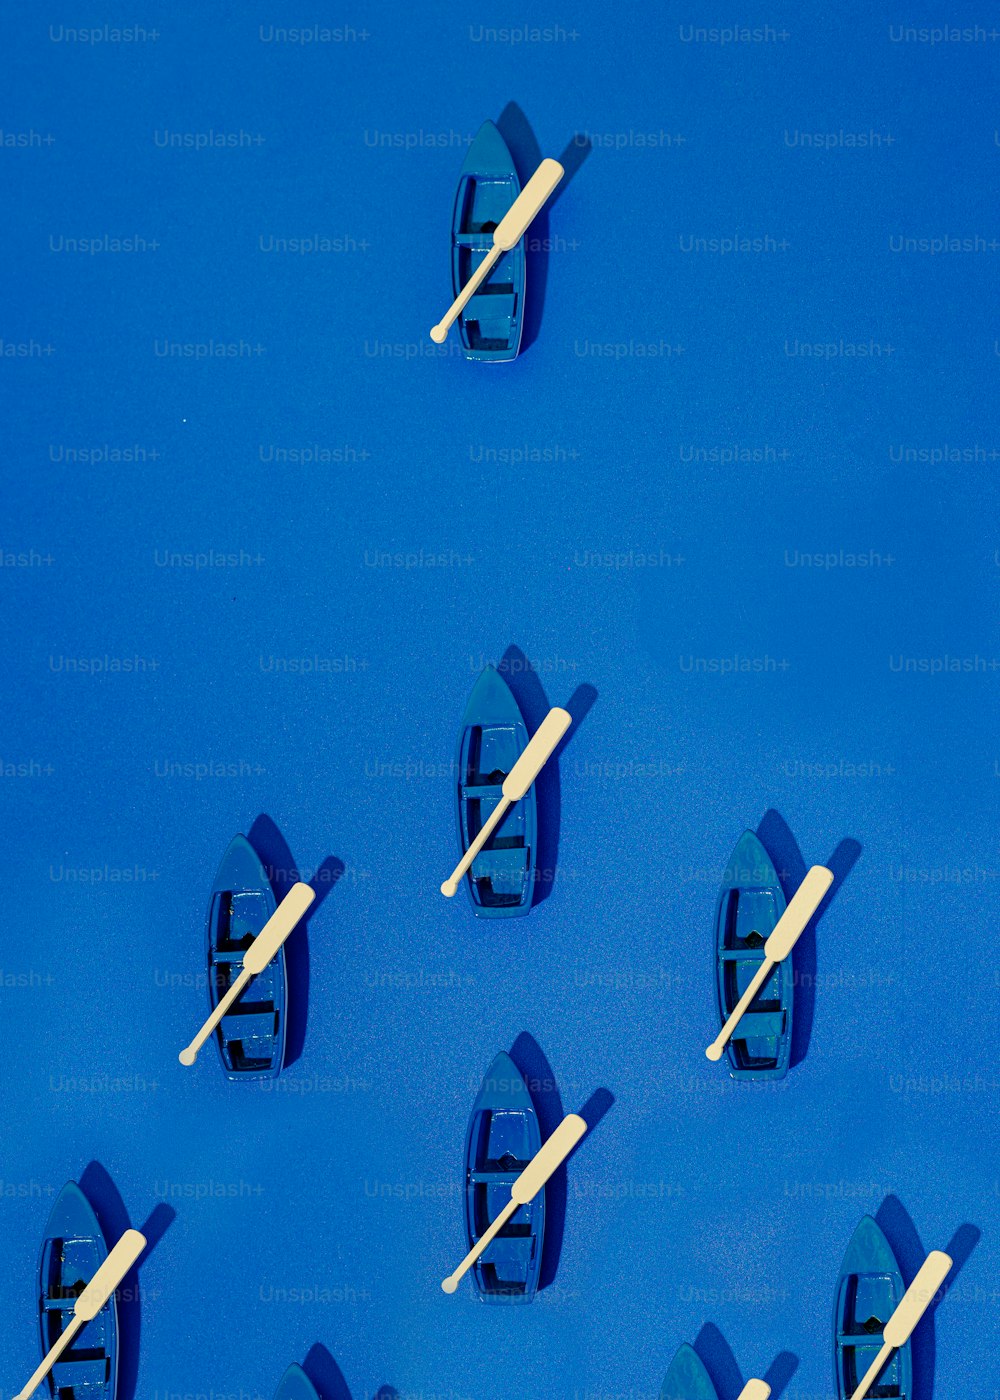 Eine Gruppe kleiner Boote, die auf einer blauen Oberfläche schwimmen